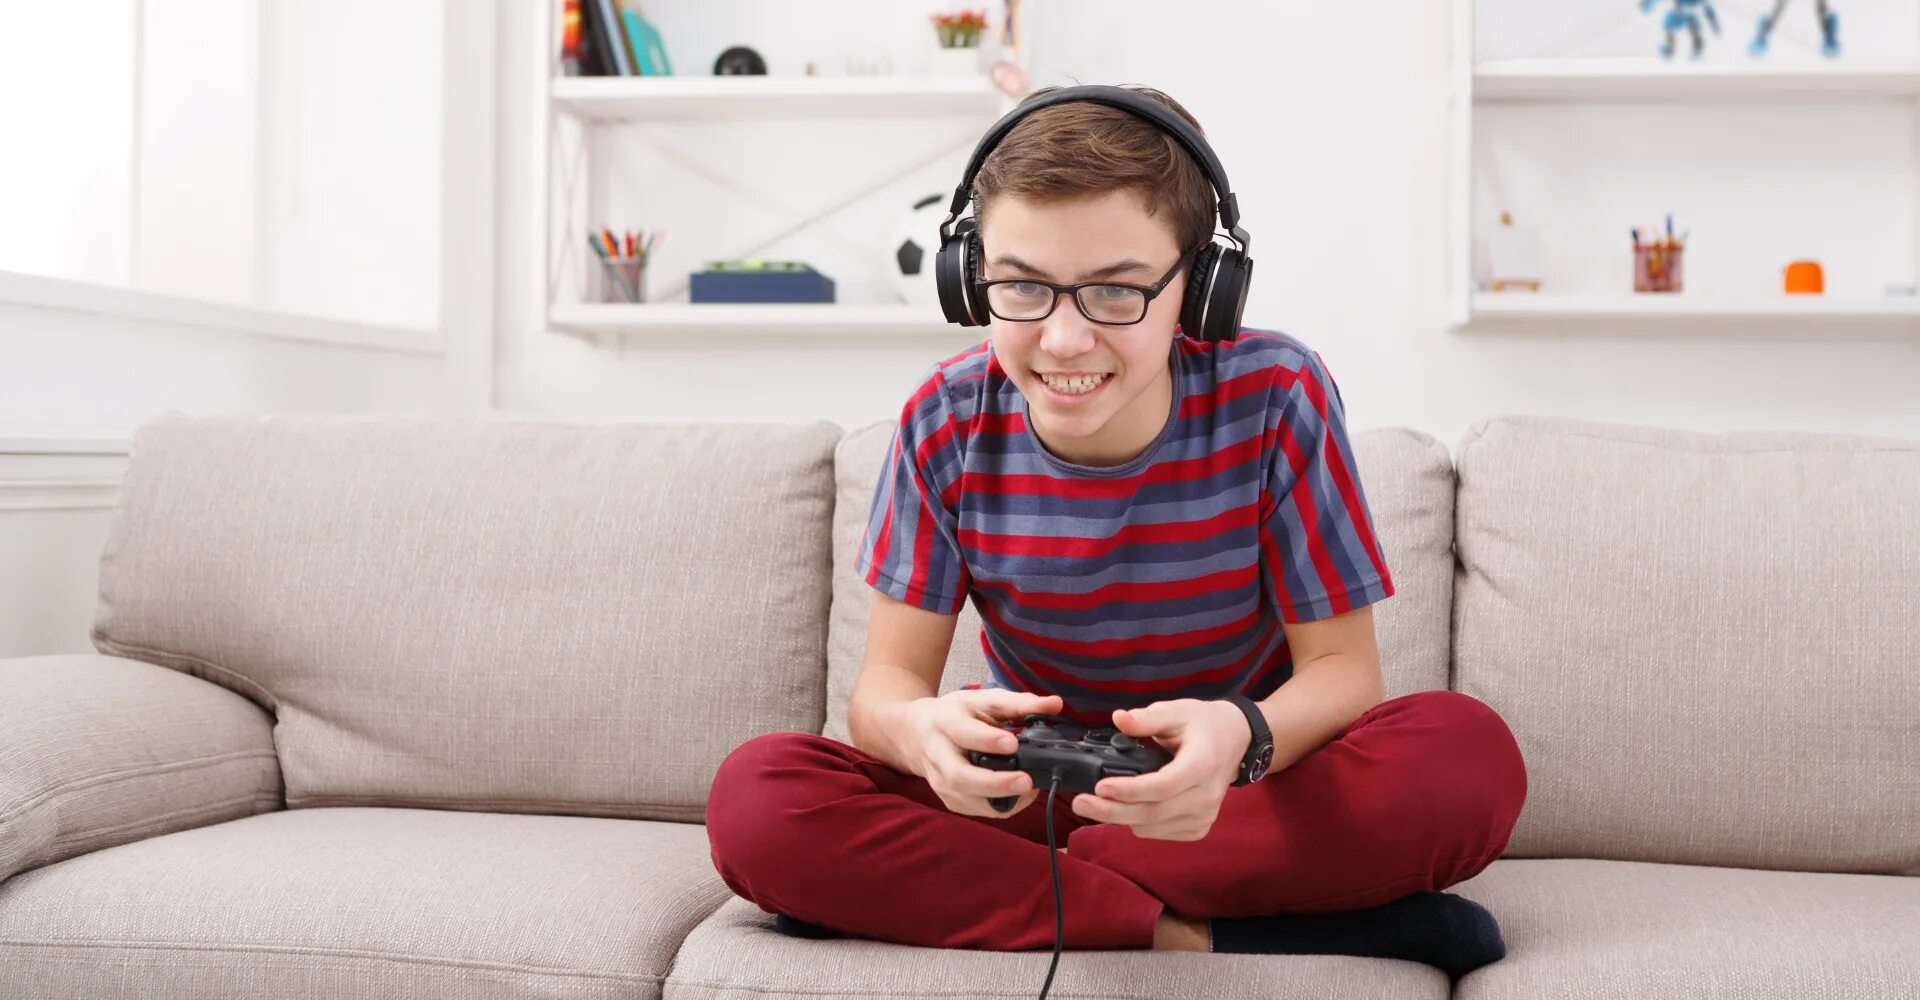 He enjoy playing. Мальчик с джойстиком. Сидит с джойстиком. Мальчик на диване с джойстиком. Подростки играющие в компьютерные игры.